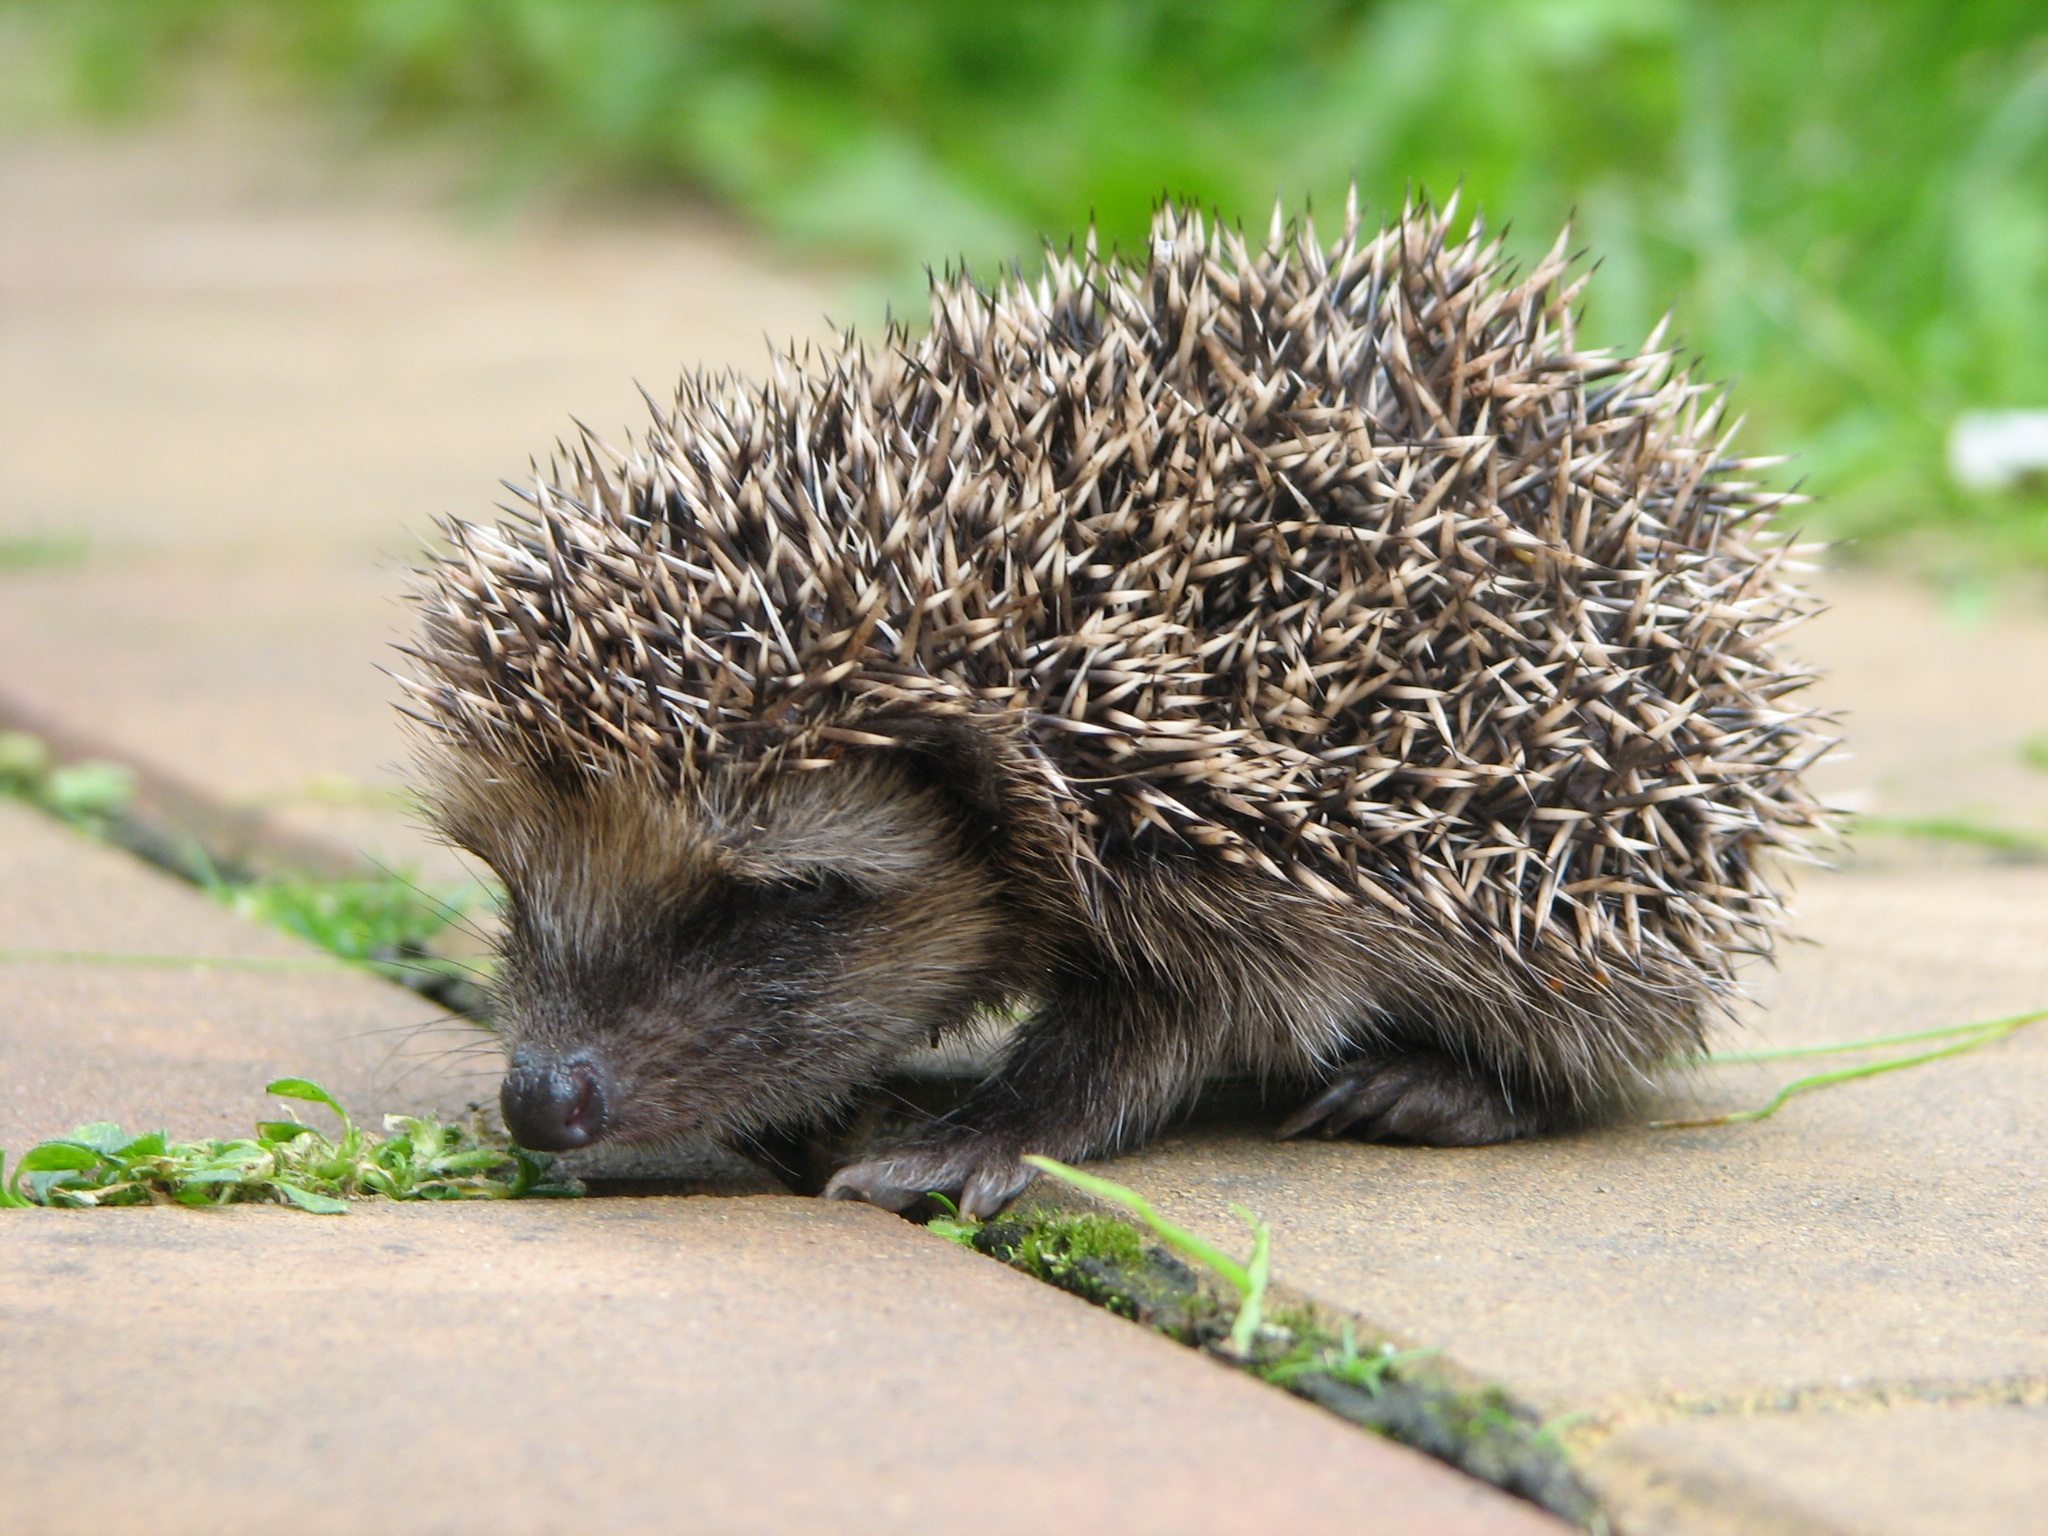 A hedgehog sits on a stone tile